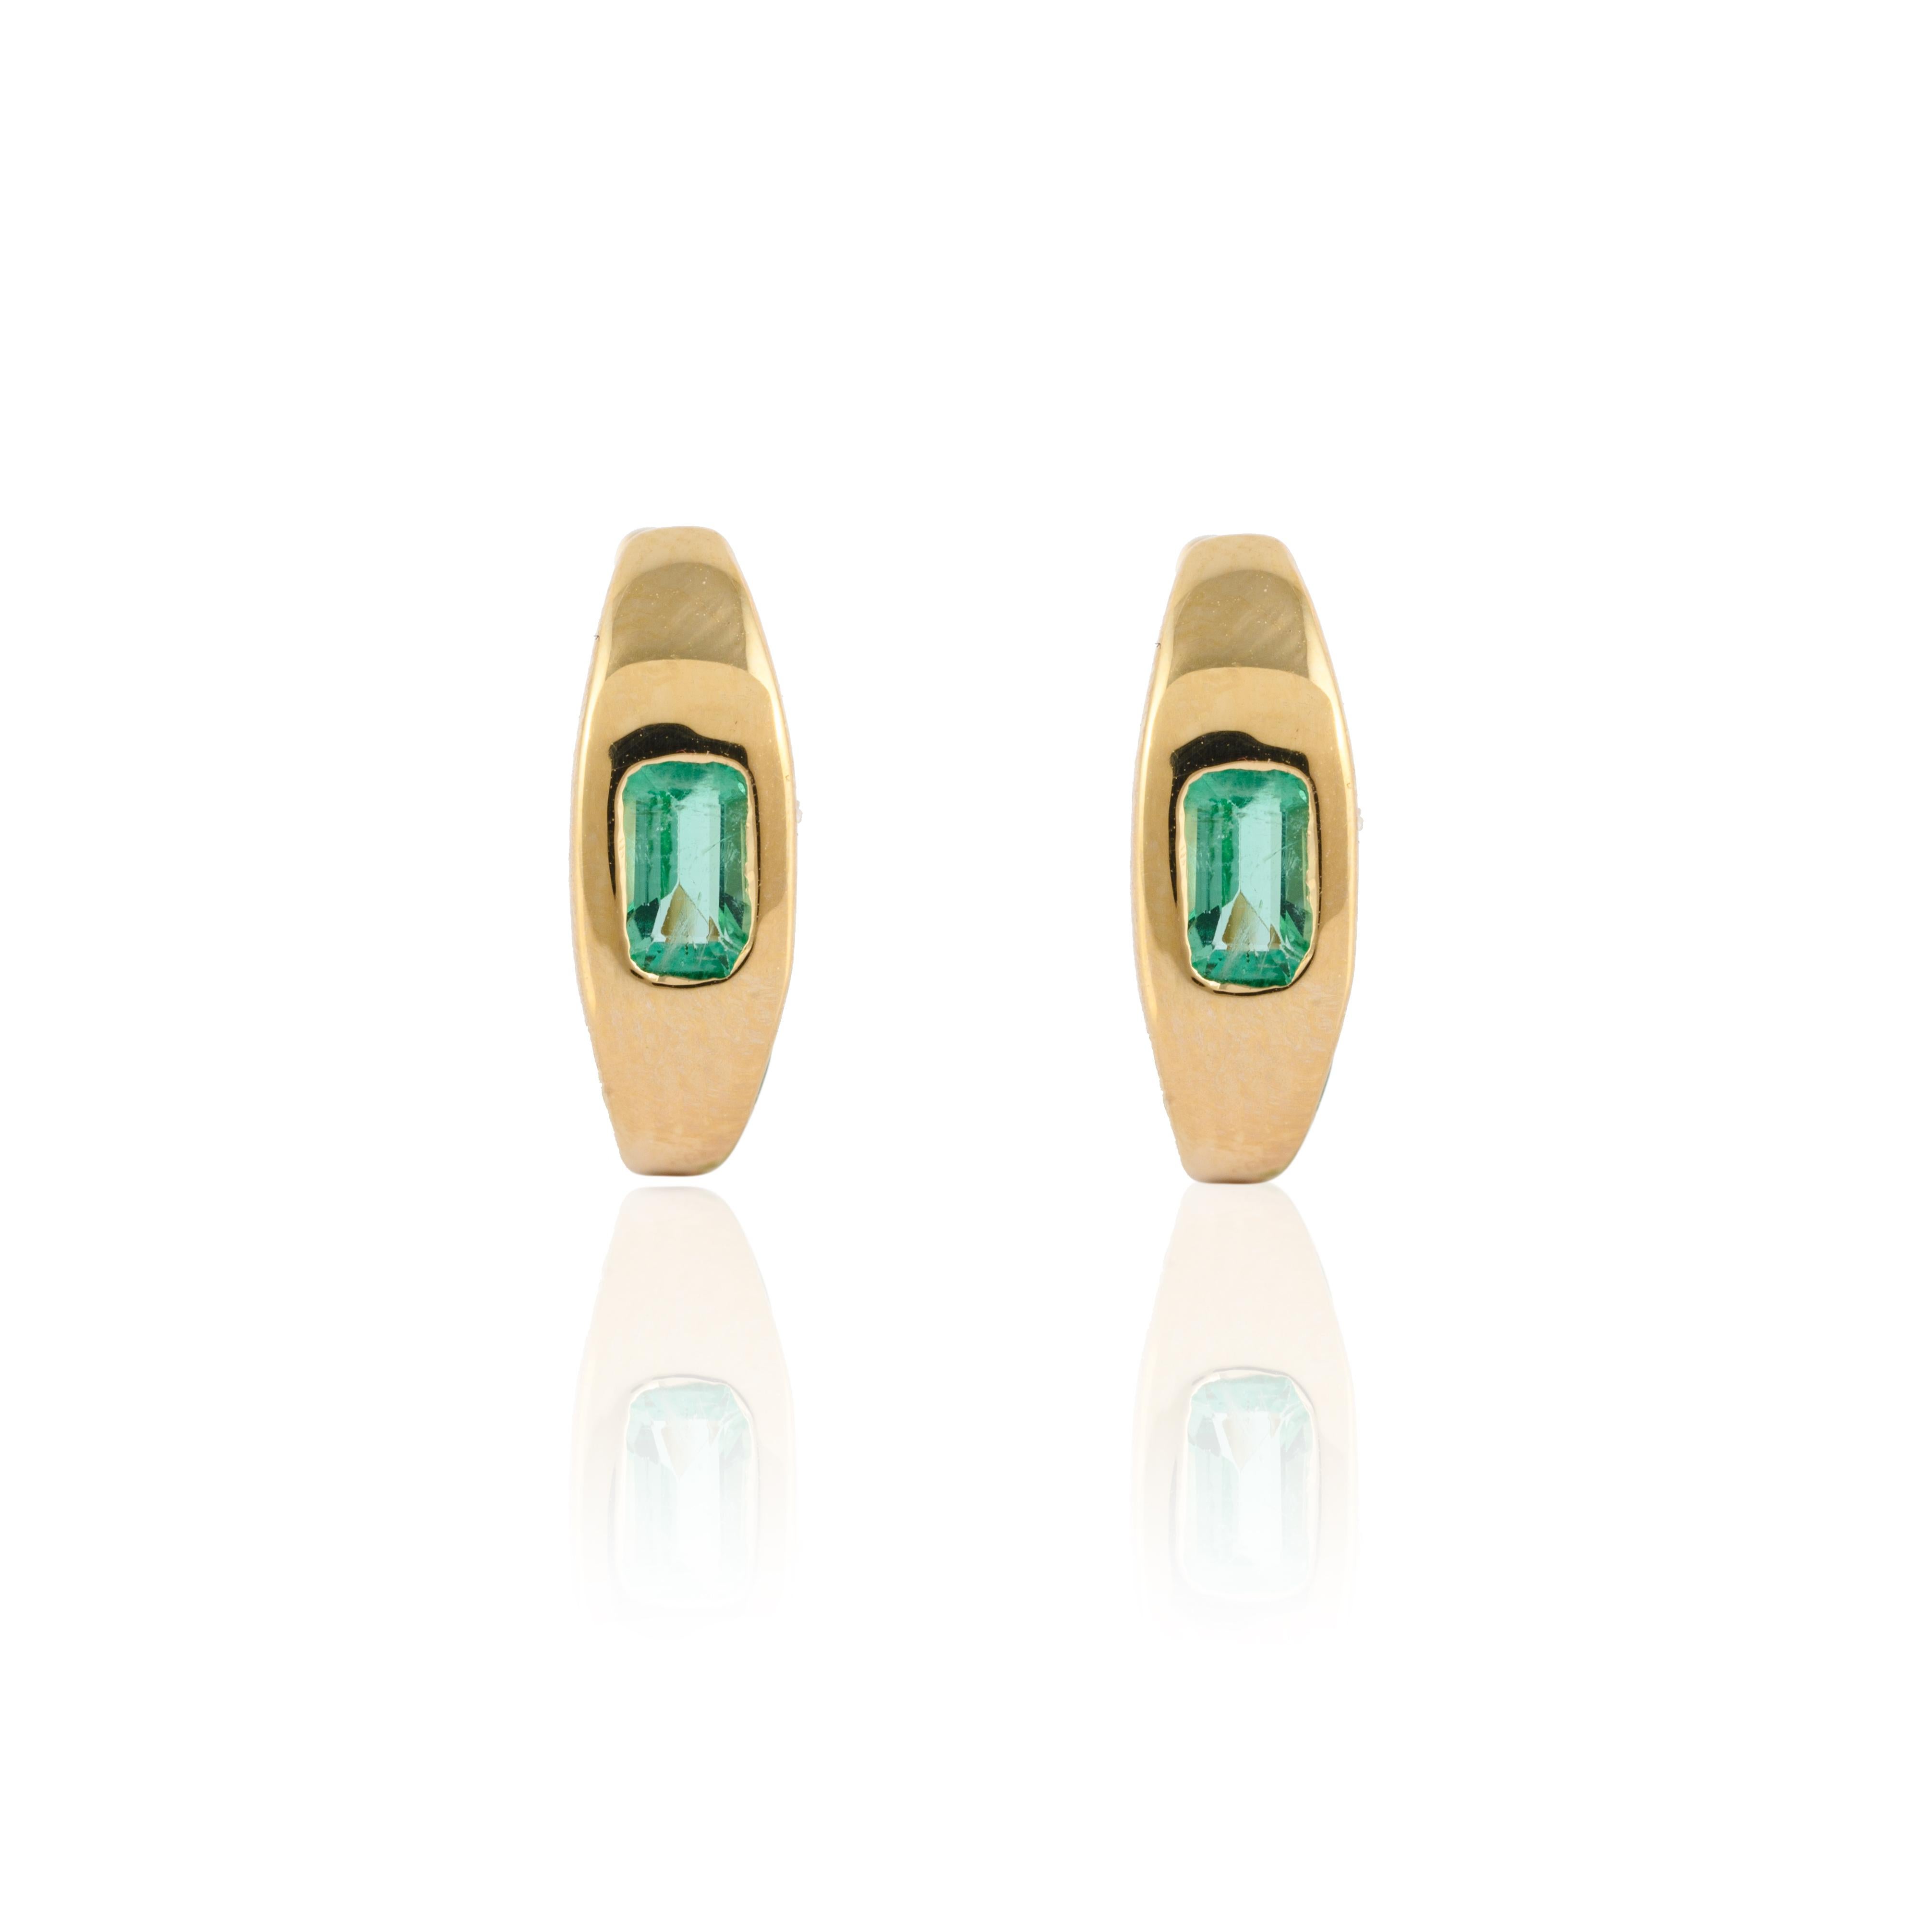 Minimalistische, mit Smaragden besetzte Huggie-Ohrringe aus 14-karätigem Gold, mit denen Sie ein Statement für Ihren Look setzen. Sie brauchen kleine Huggie-Ohrringe für das Büro, um mit Ihrem Look ein Statement zu setzen. Diese Ohrringe mit einem